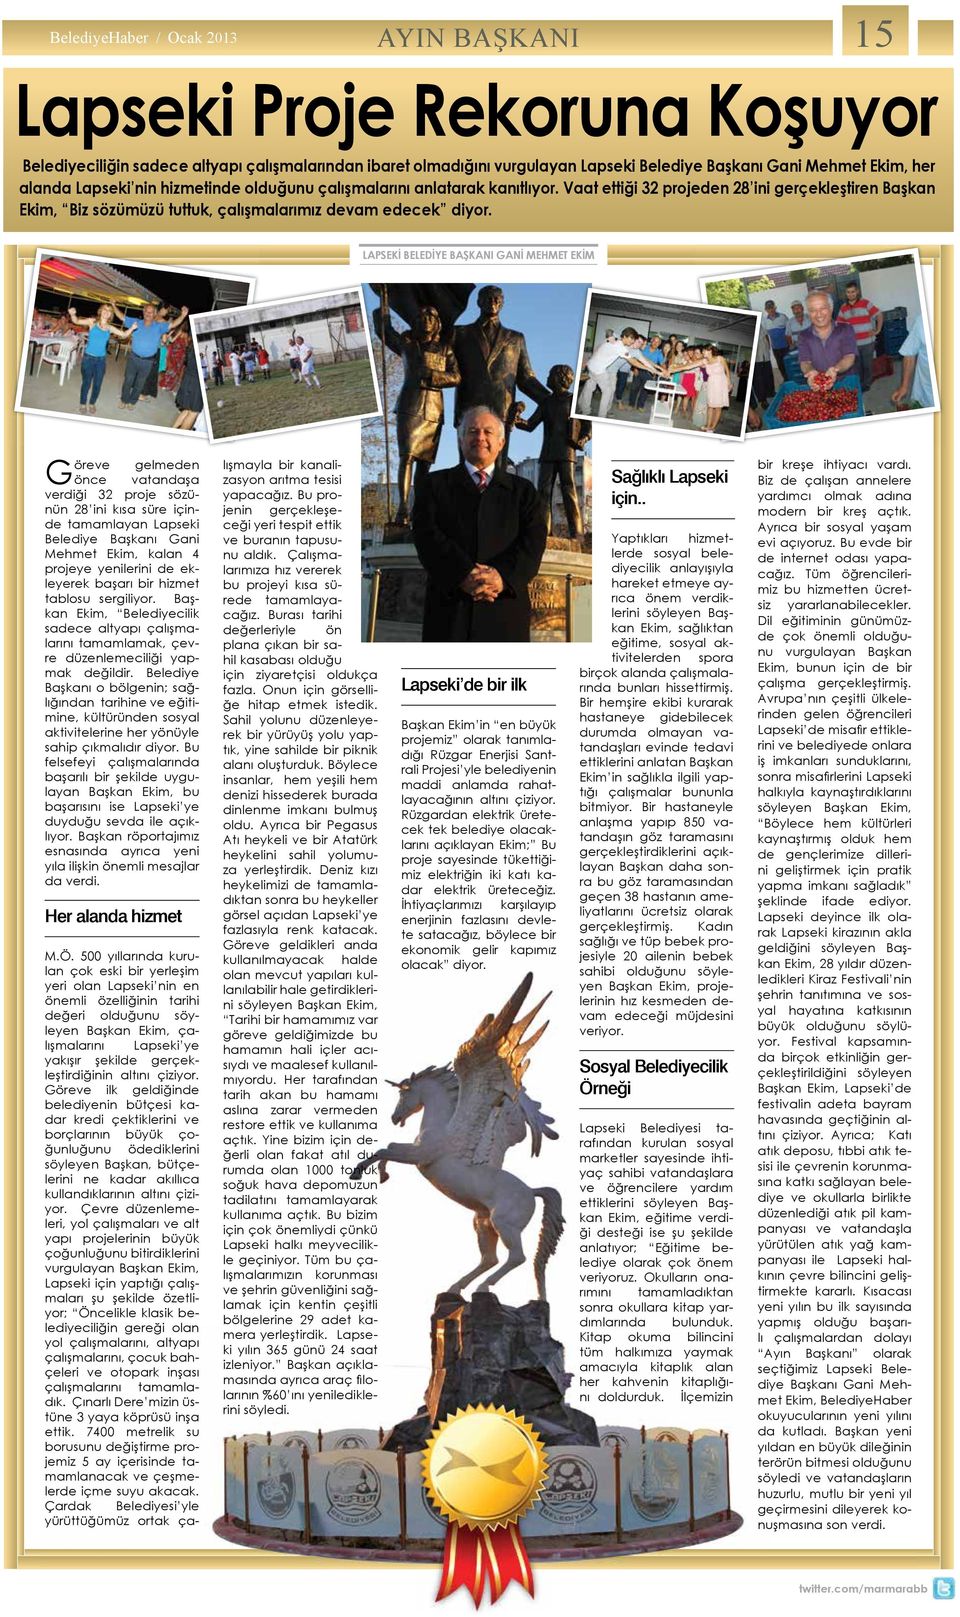 LApSEKİ BELEdİYE BAŞKAnI gani MEHMET EKİM Göreve gelmeden önce vatandaşa verdiği 32 proje sözünün 28 ini kısa süre içinde tamamlayan Lapseki Belediye Başkanı Gani Mehmet Ekim, kalan 4 projeye